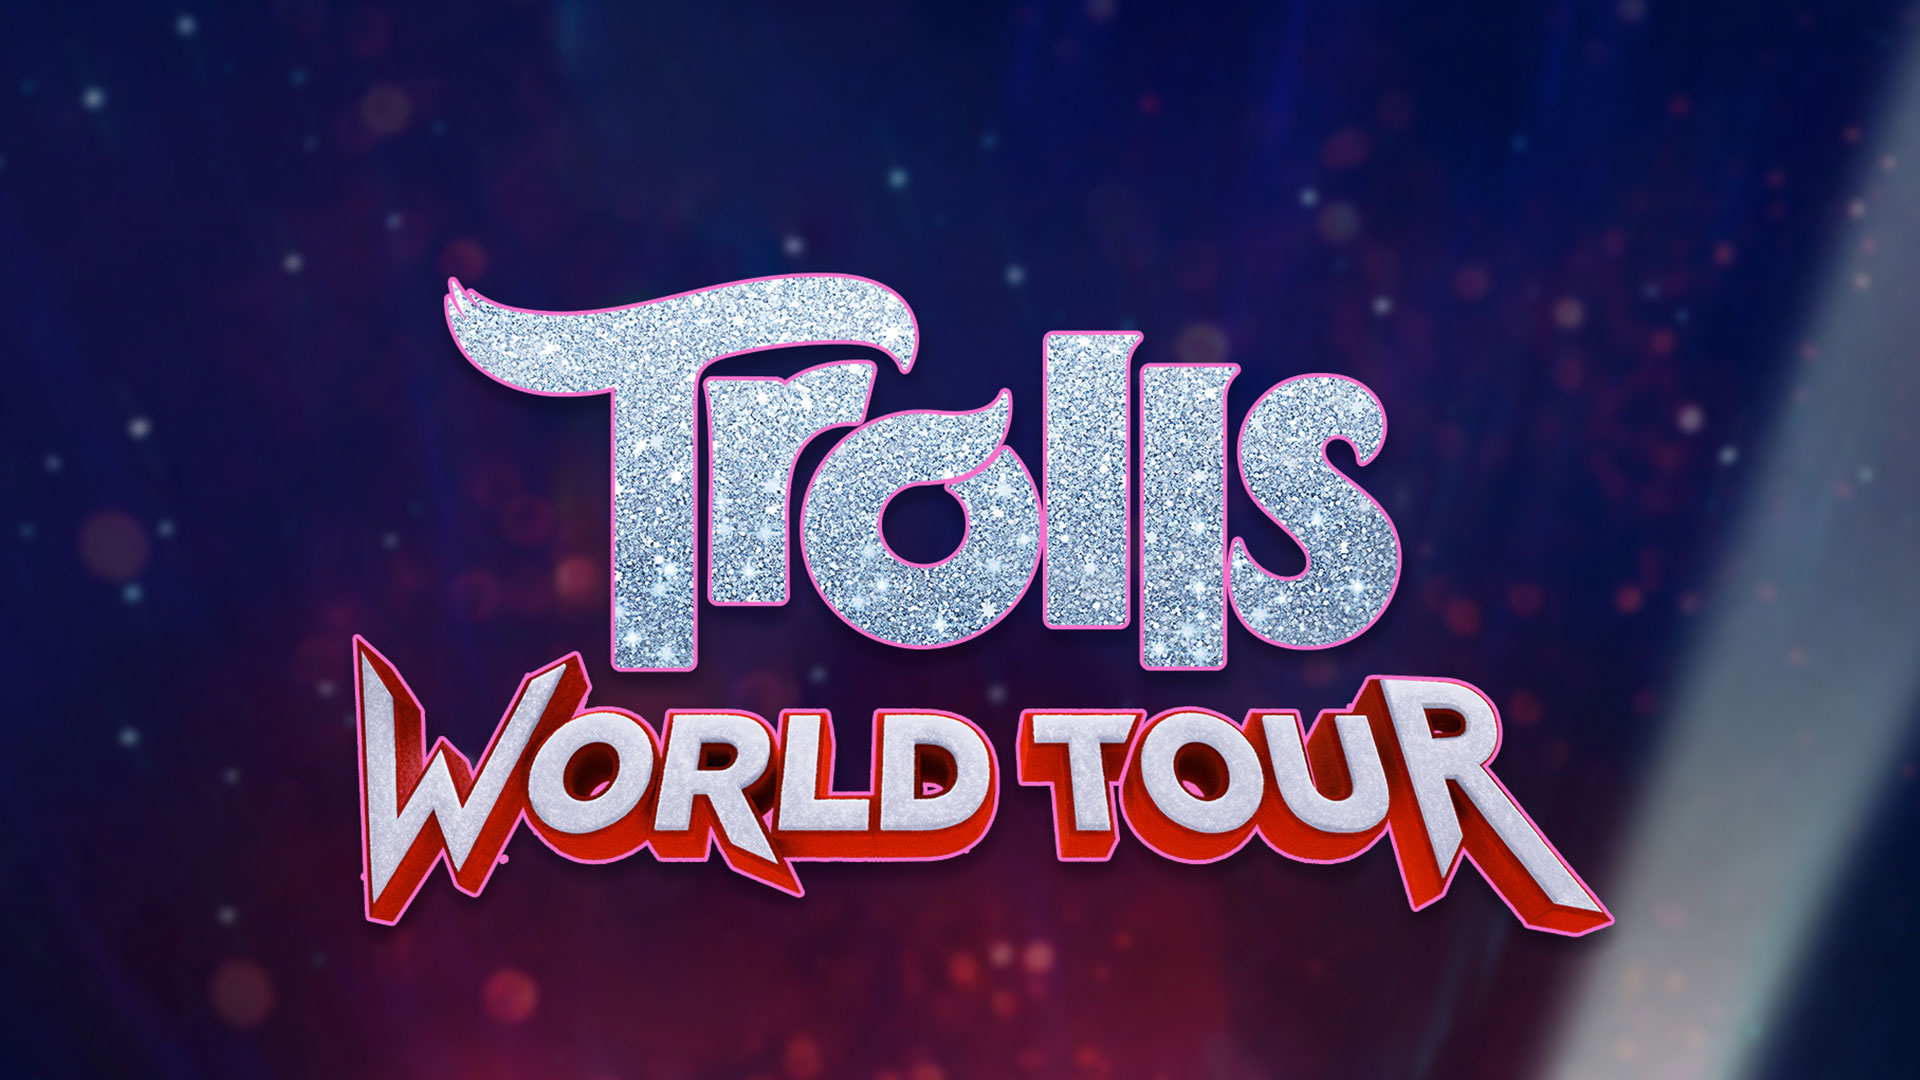 Trolls World Tour - USANetwork.com